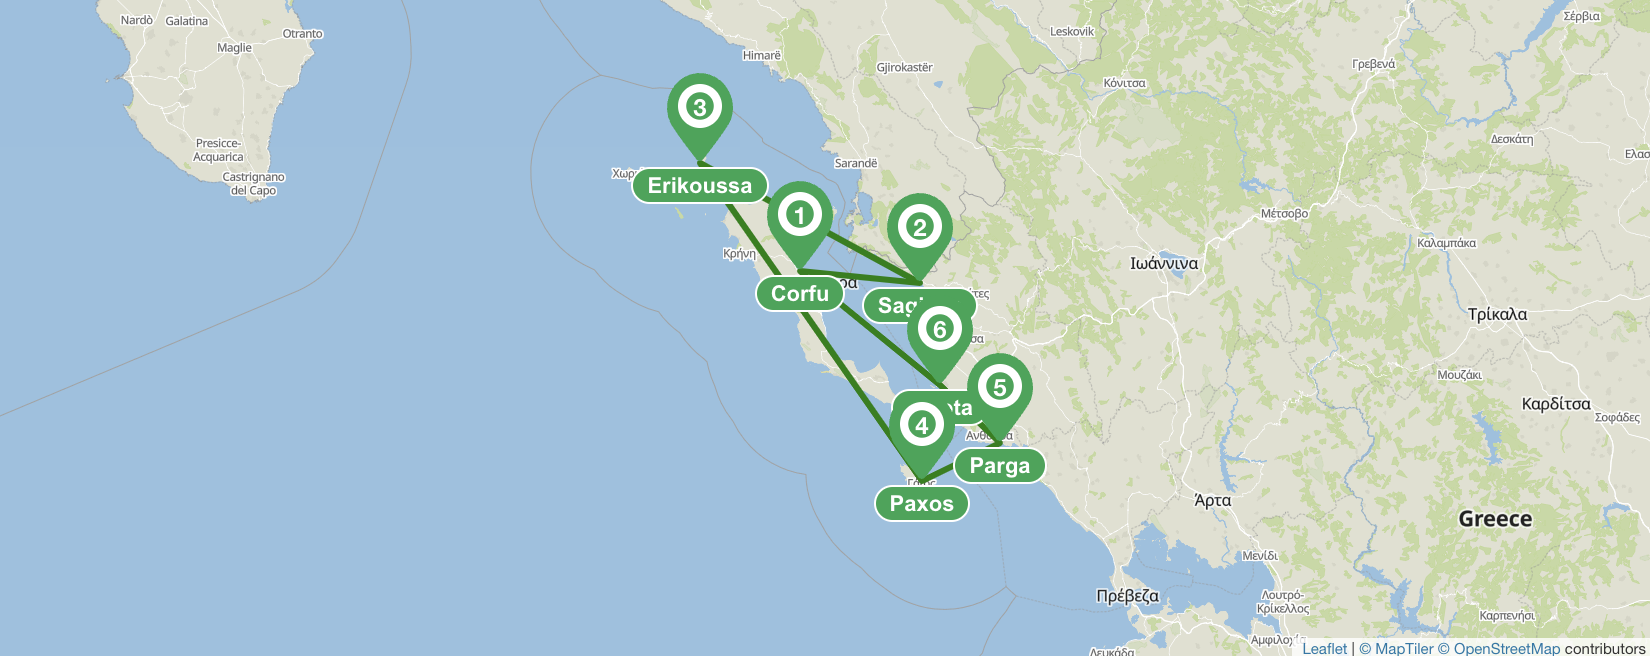 Itinerario di navigazione di 7 giorni a Corfù